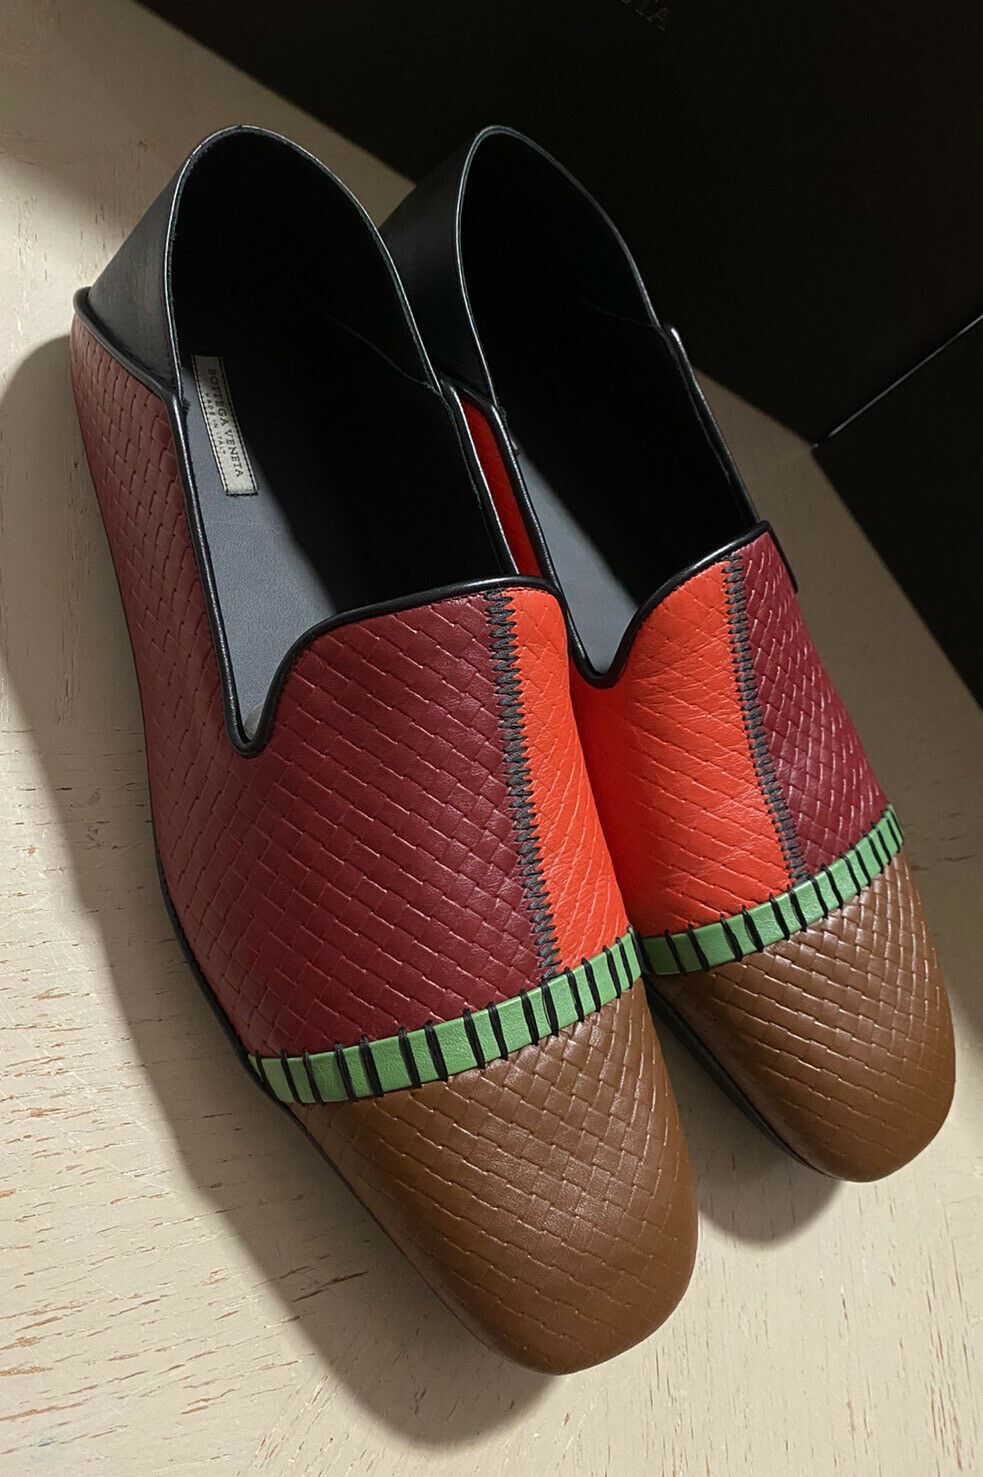 СПИ $710 Bottega Veneta Мужские кожаные лоферы/сандалии 4 цвета 8 США/41 ЕС